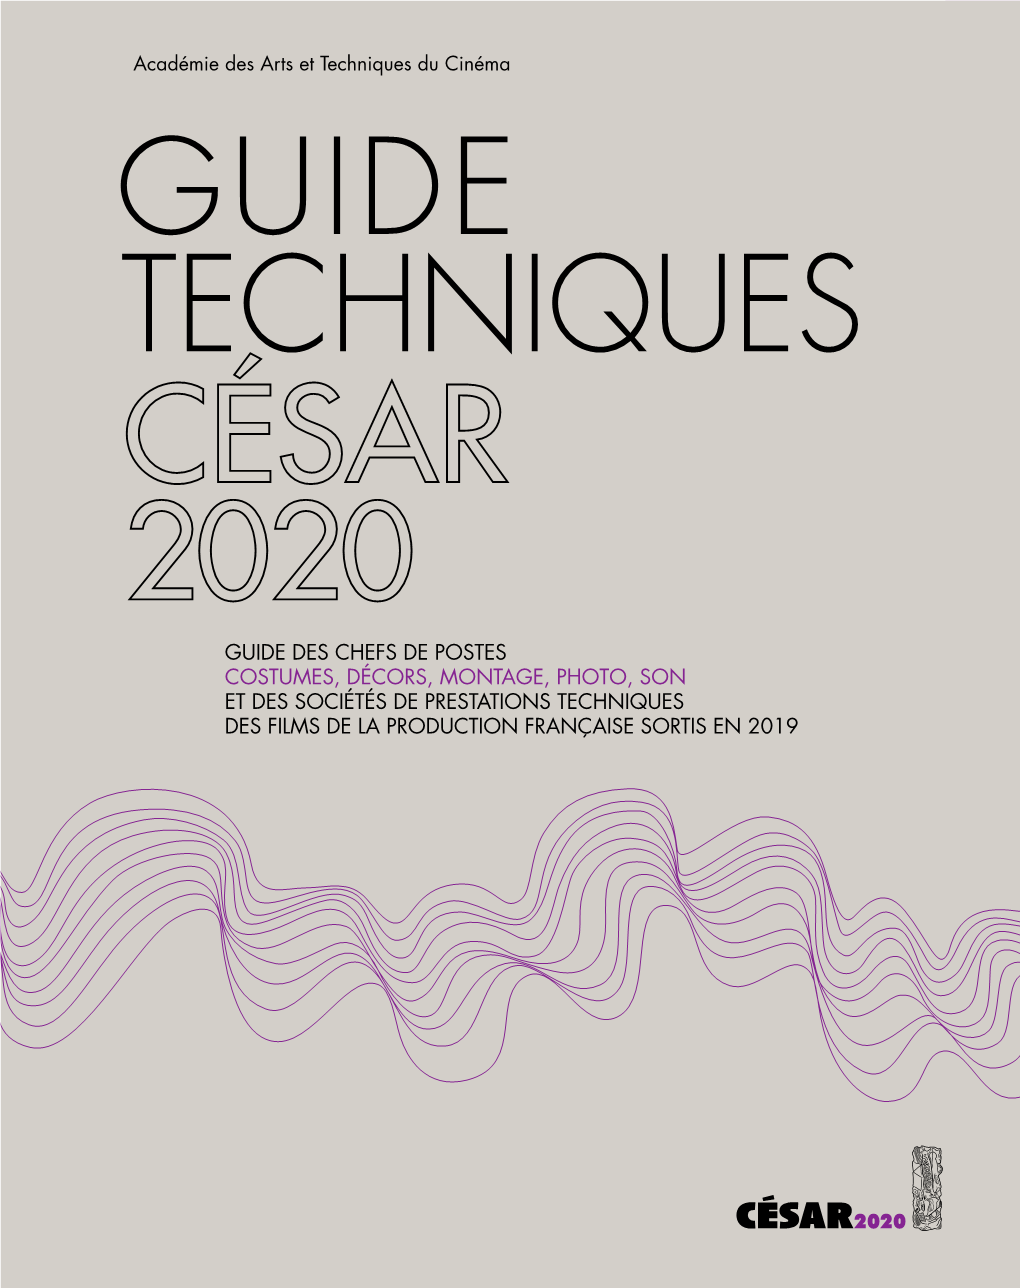 Guide Technique César 2020